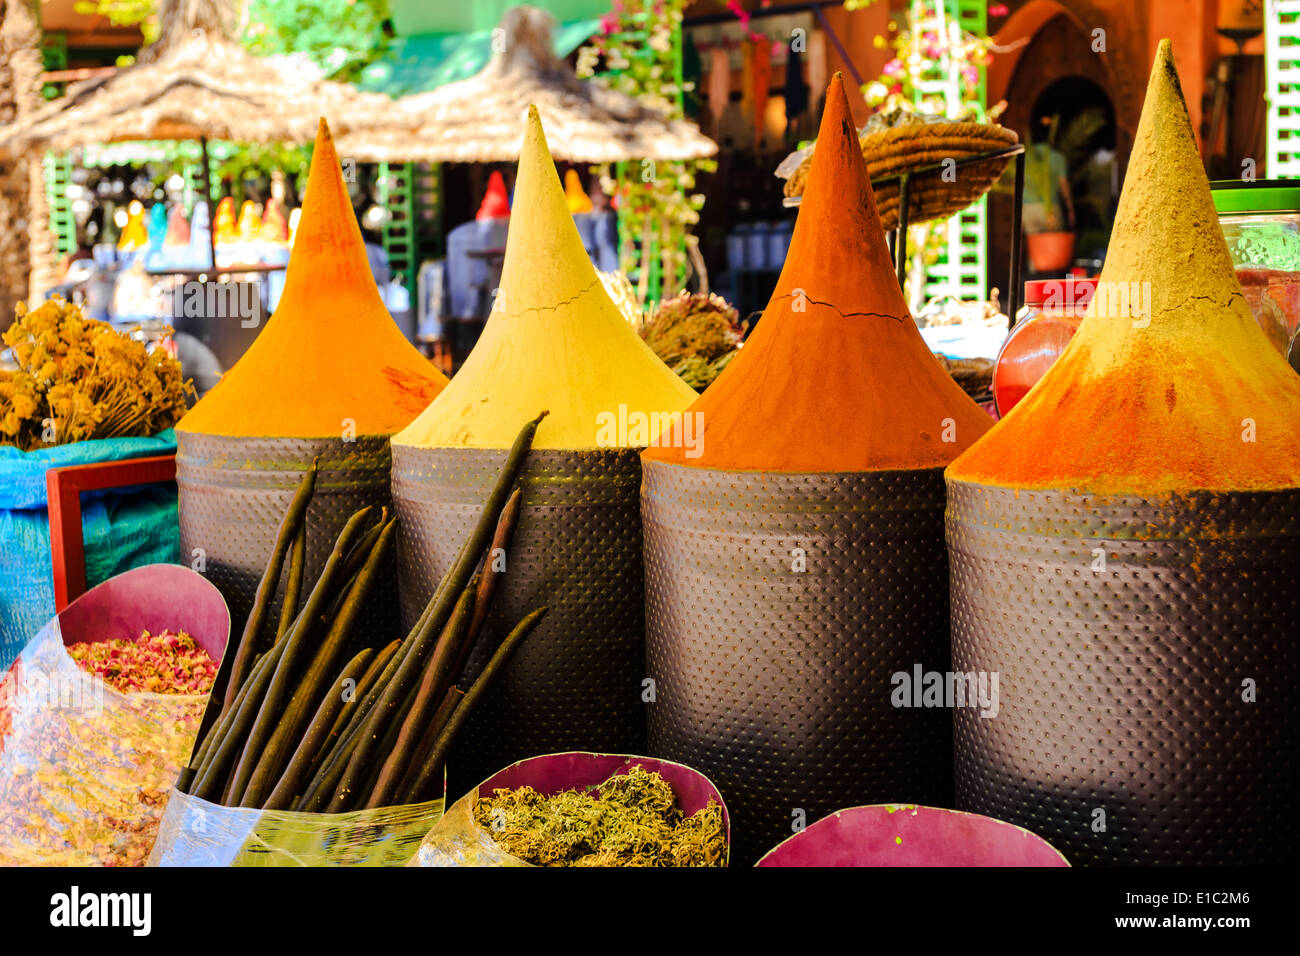 Marocchina di stallo di spezie nel mercato di Marrakech, Marocco Foto Stock